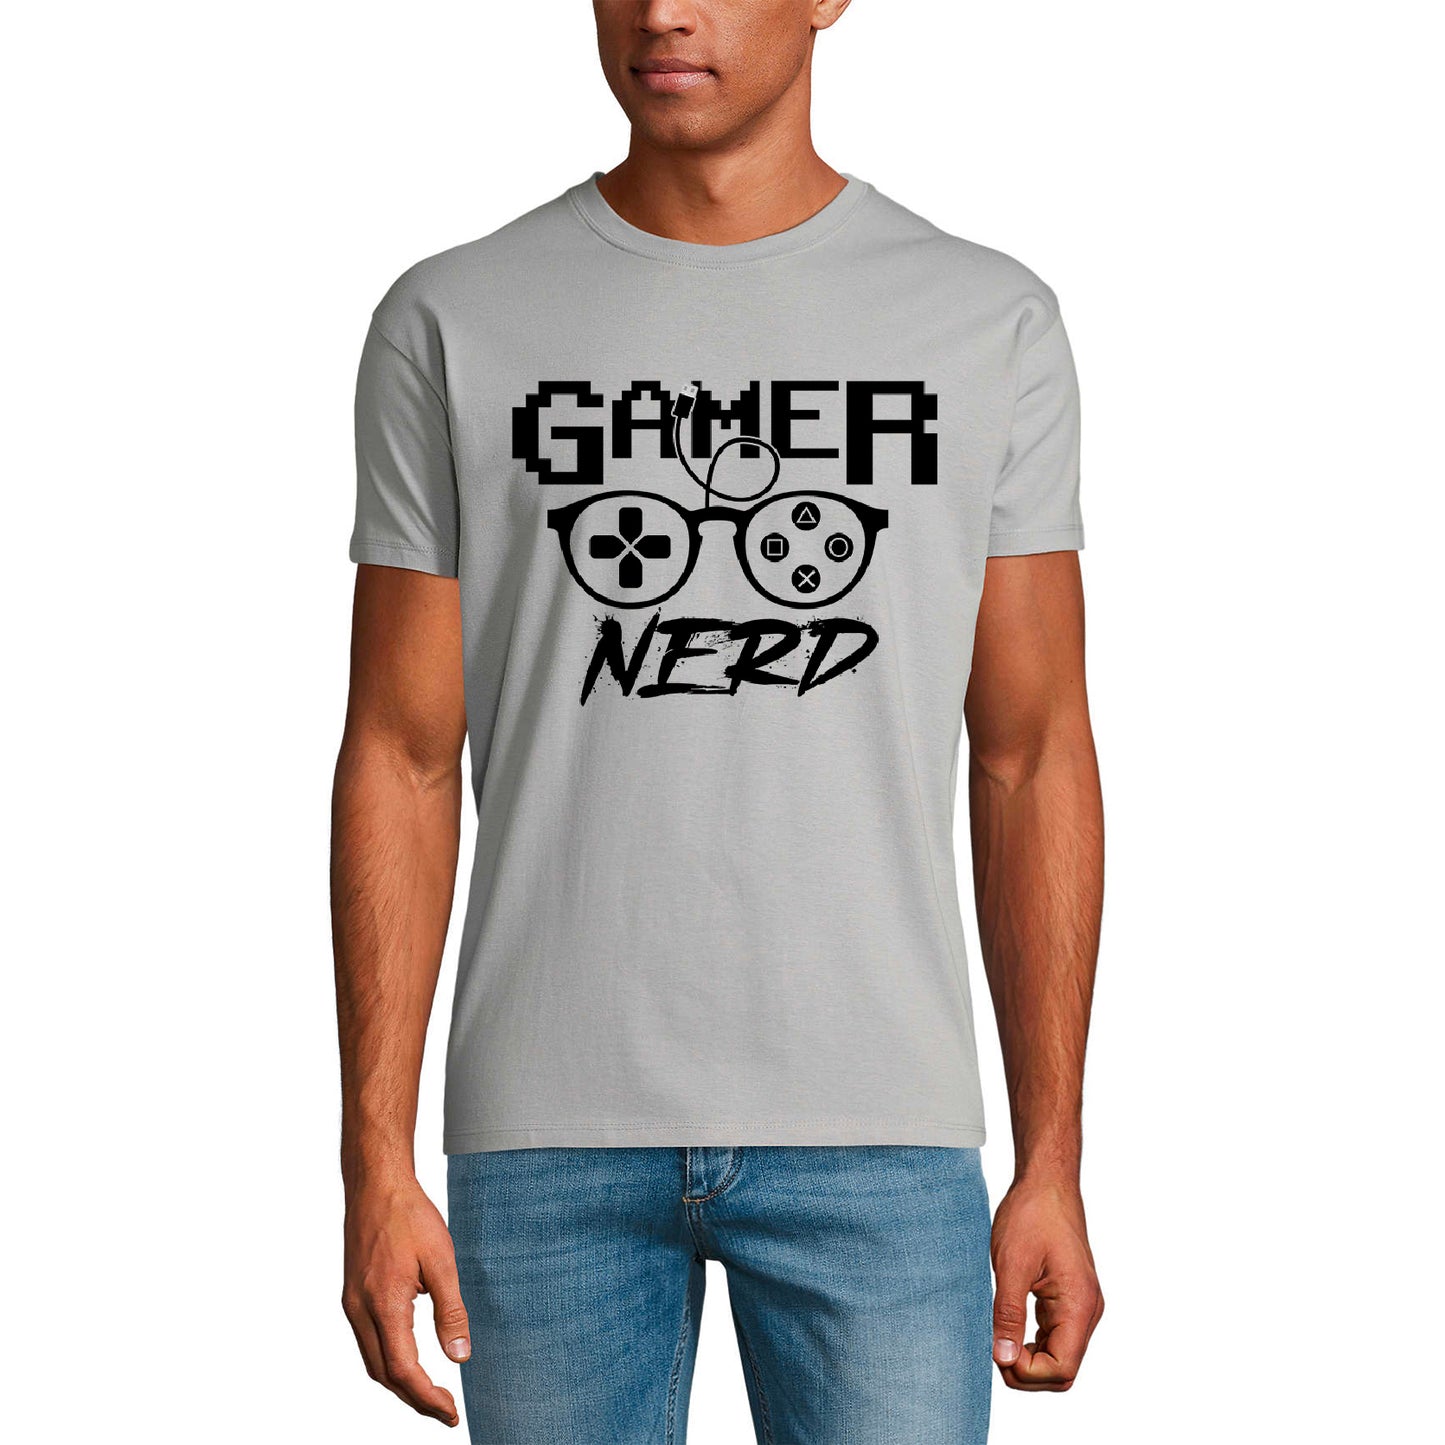 ULTRABASIC Graphic Men's T-Shirt Gamer Nerd - Funny Gaming Apparel - Humor Joke